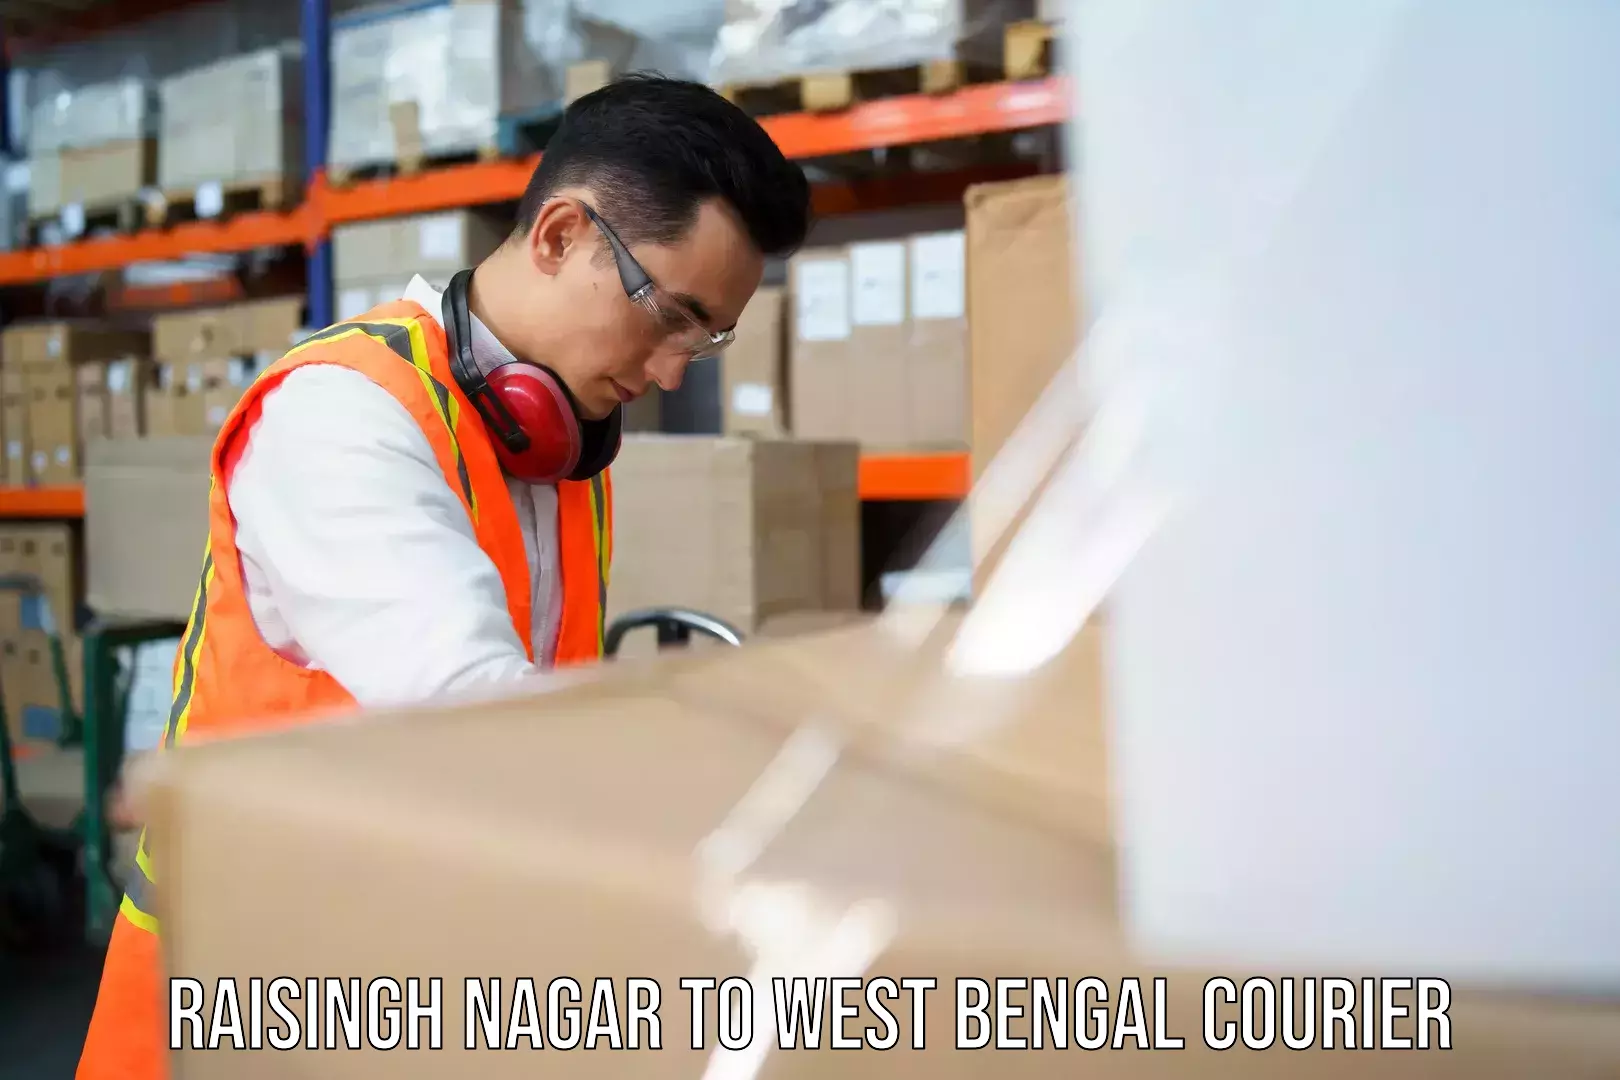 24/7 shipping services Raisingh Nagar to Onda